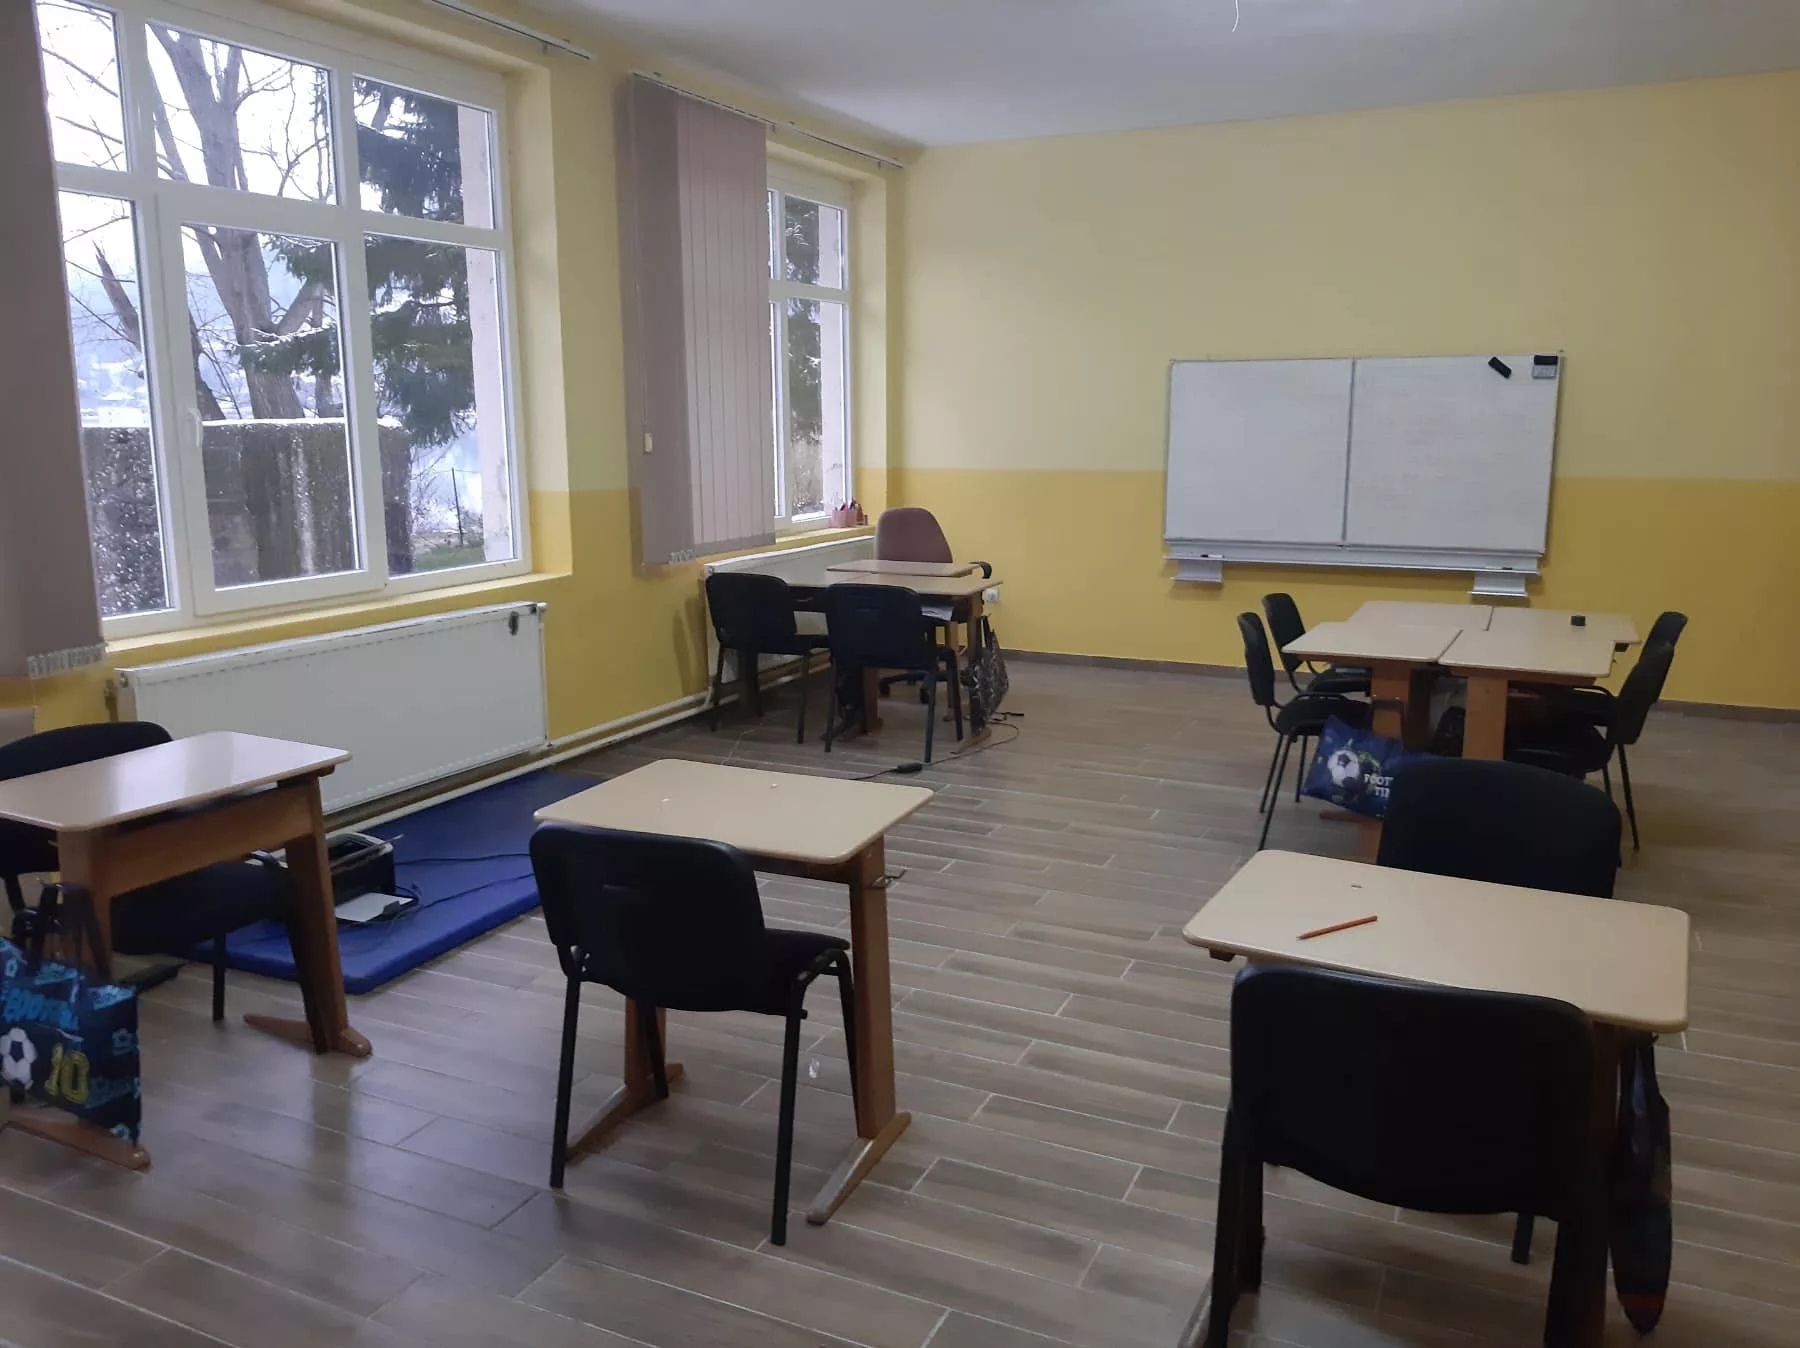 Završeni radovi uređenja učionica i sanacija krova u školi na Diviču (FOTO)